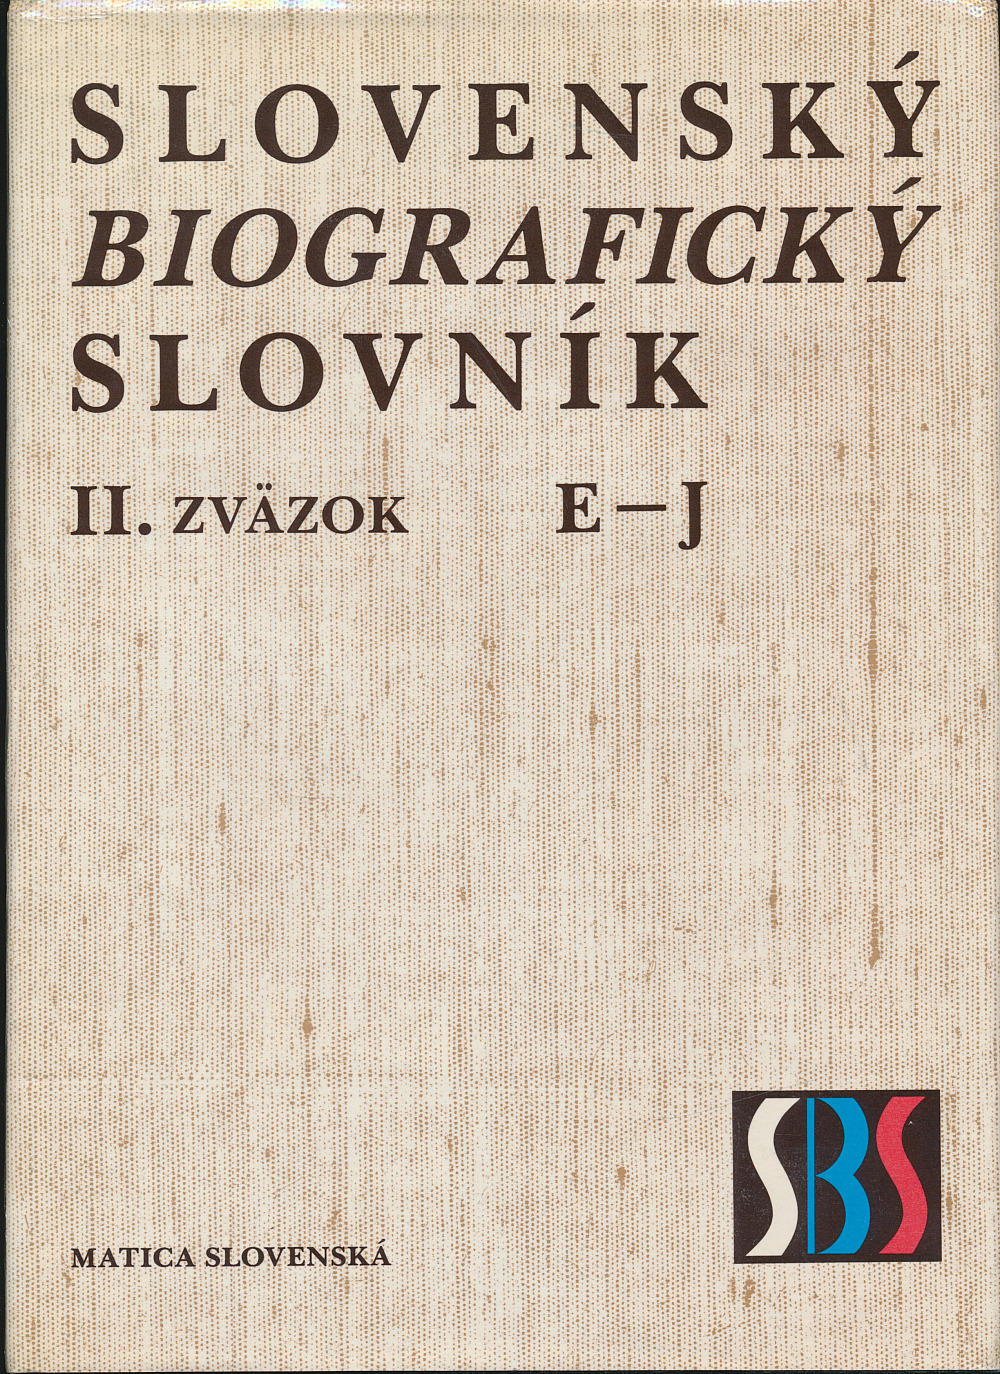 Slovenský biografický slovník II. E – J